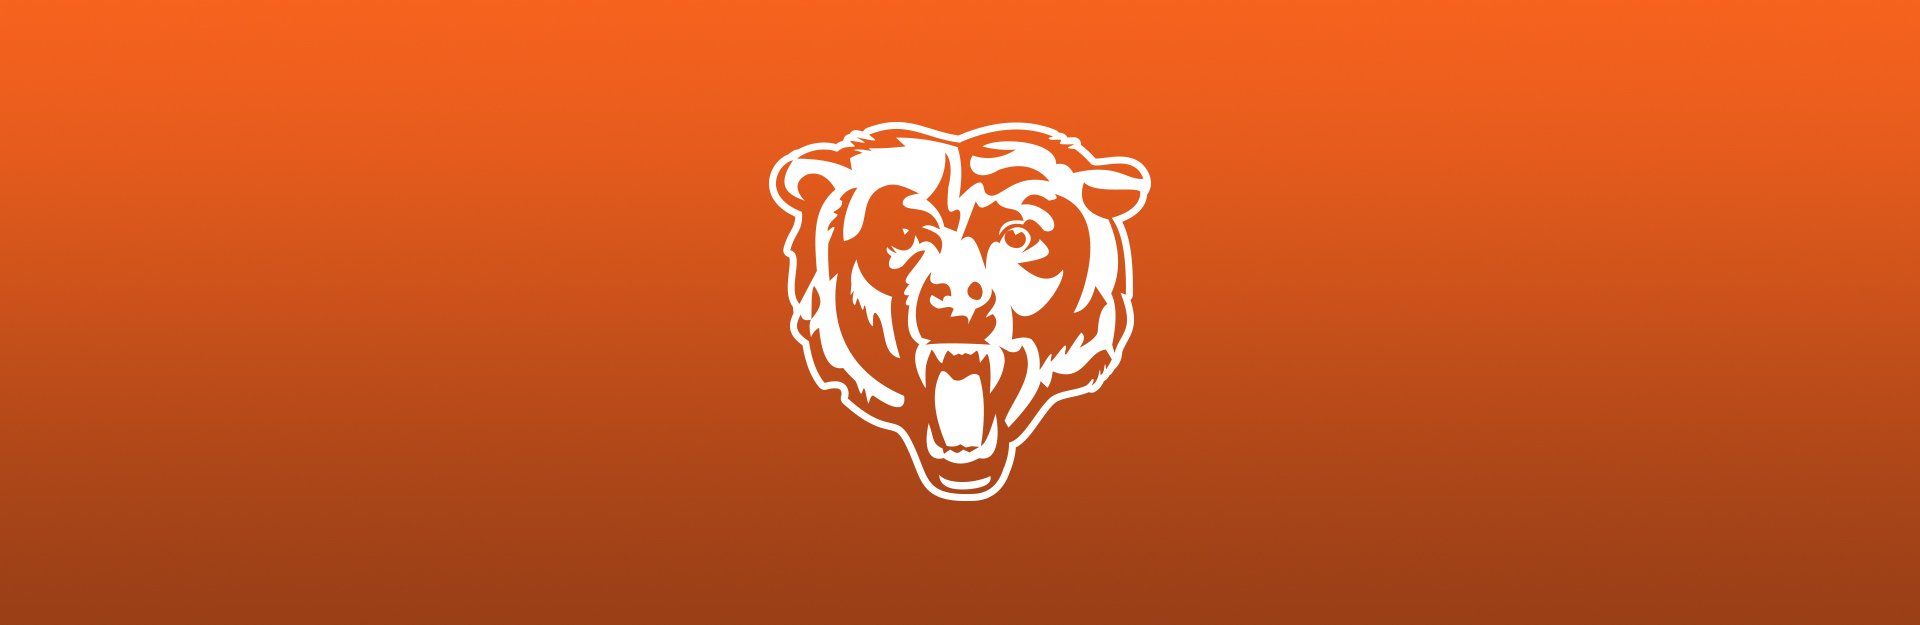 Chicago Bears logo on orange background